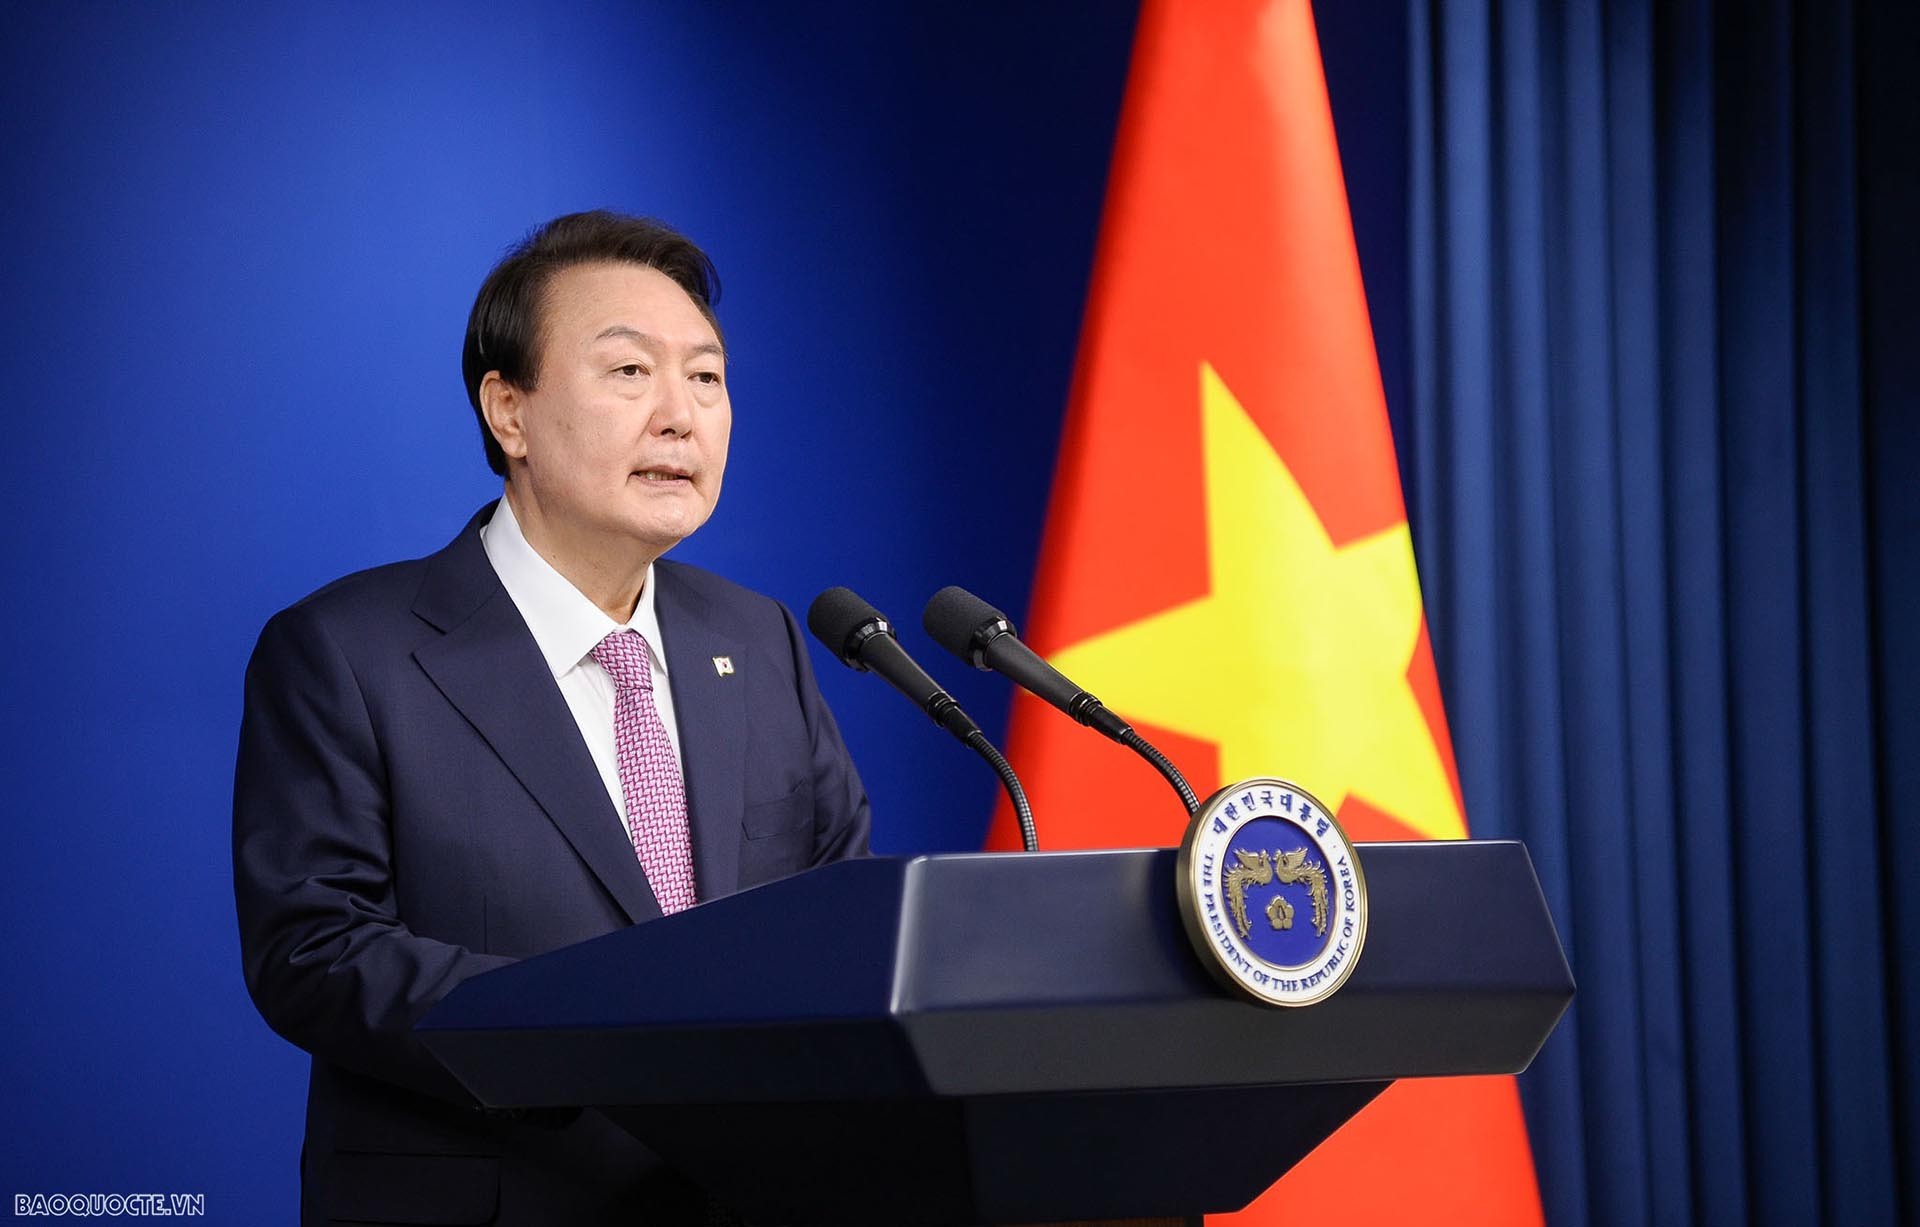 Tổng thống Hàn Quốc: Seoul sẽ không ngừng tăng cường hợp tác theo định hướng tương lai vì mục tiêu cùng Việt Nam thịnh vượng